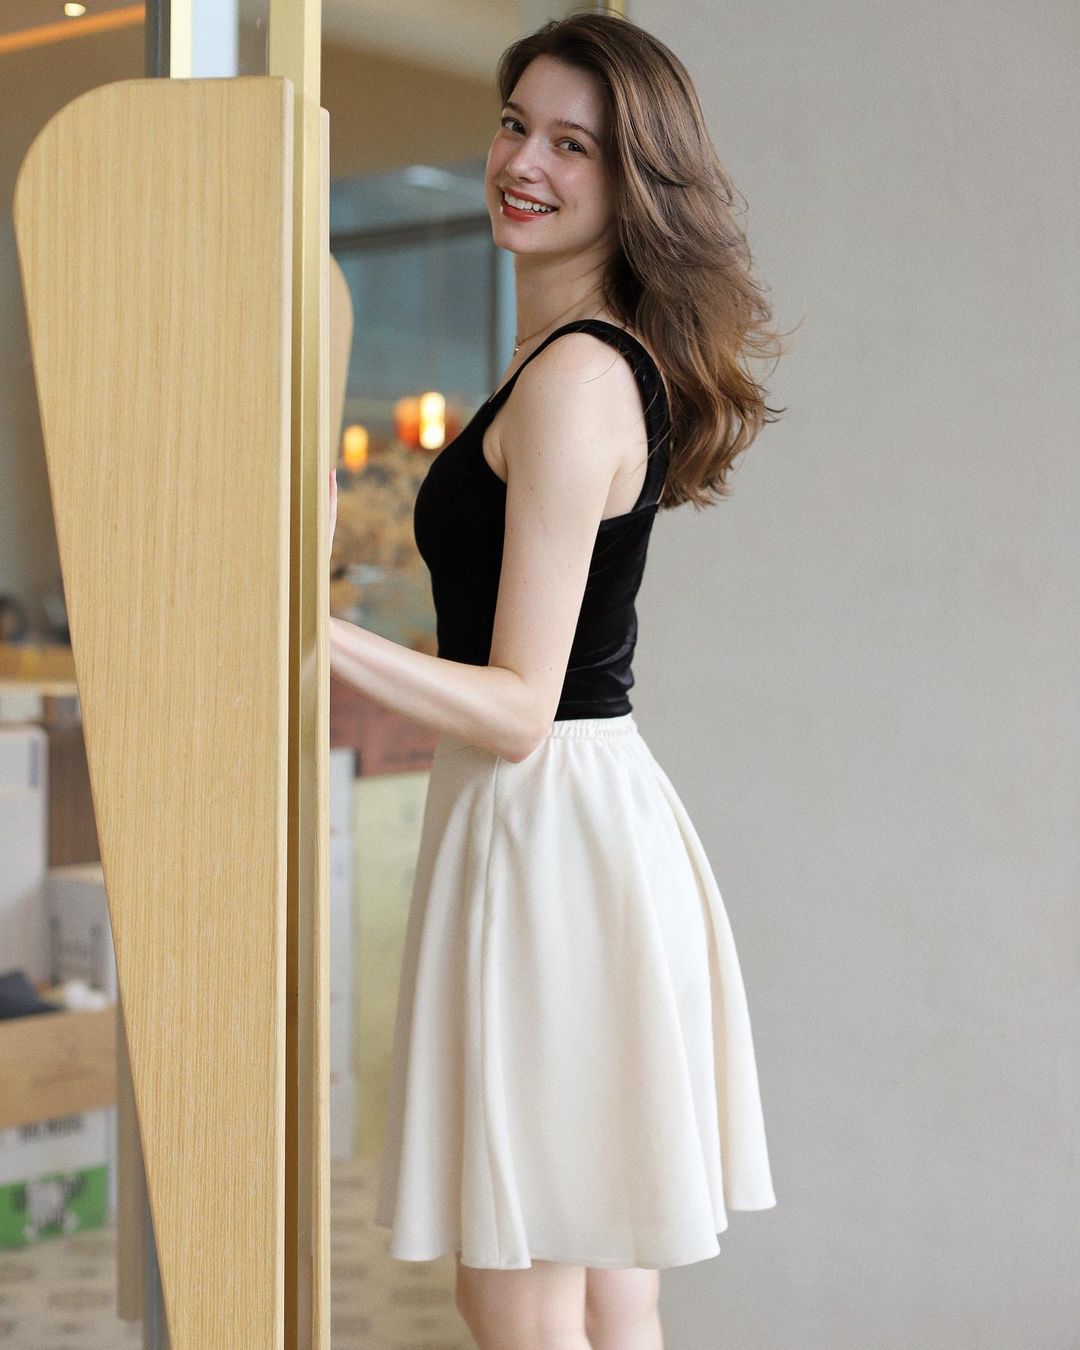 Anastasia Cebulska chọn cho mình chiếc áo 2 dây quai to bản được may bằng vải nhung "mix" với chân váy dáng xòe màu kem. Đơn giản nhưng thời thượng.